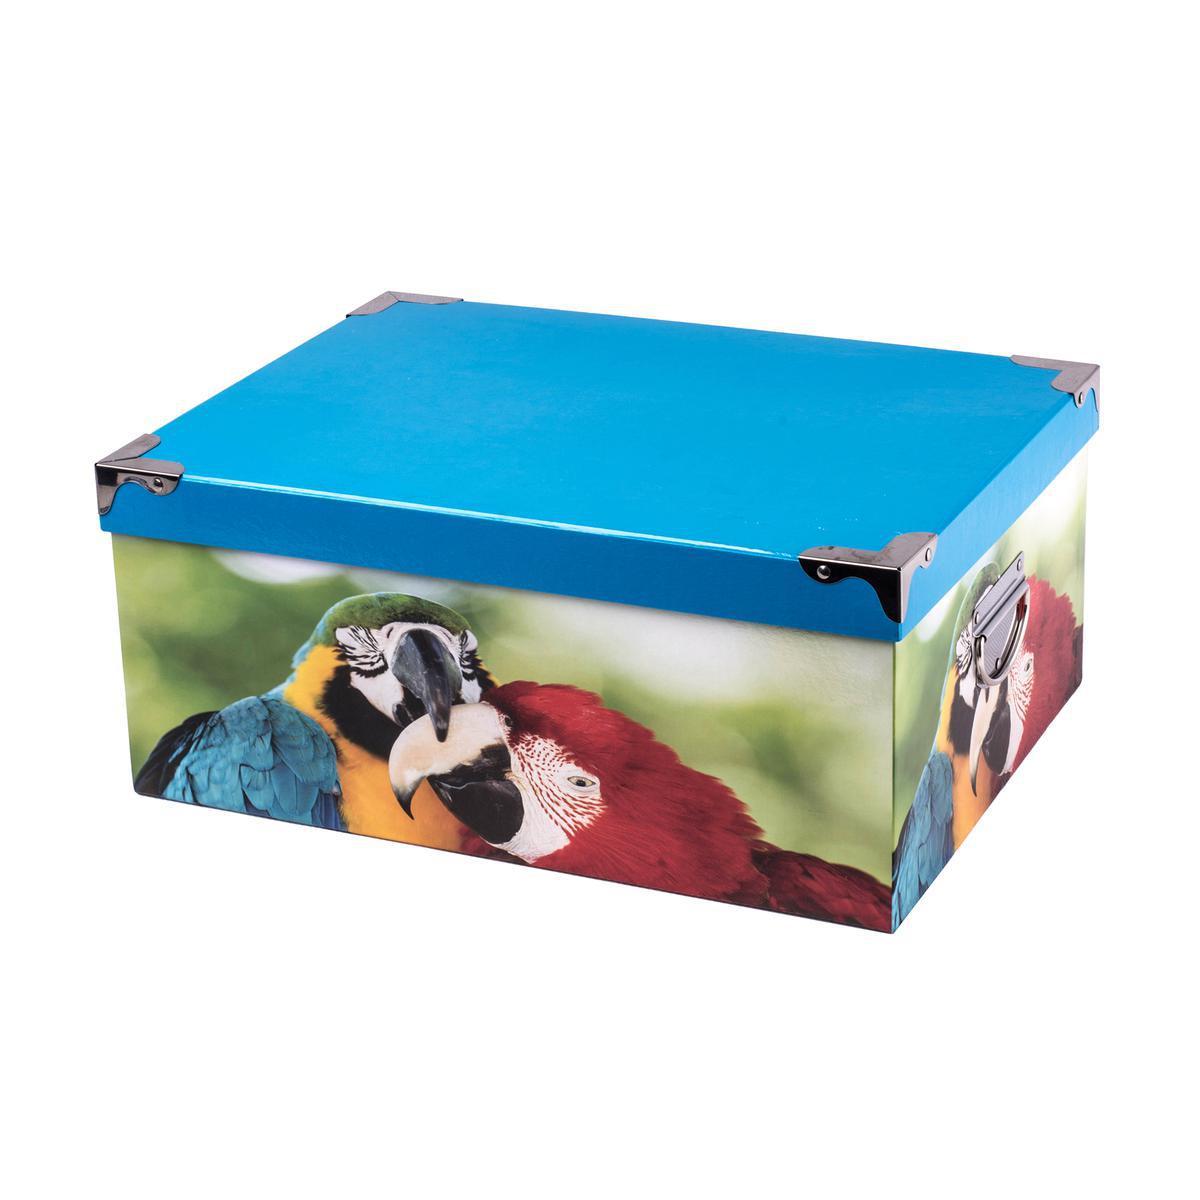 Boîte de rangement - Carton et métal - 37 x 27,5 x H 15,5 cm - Multicolore